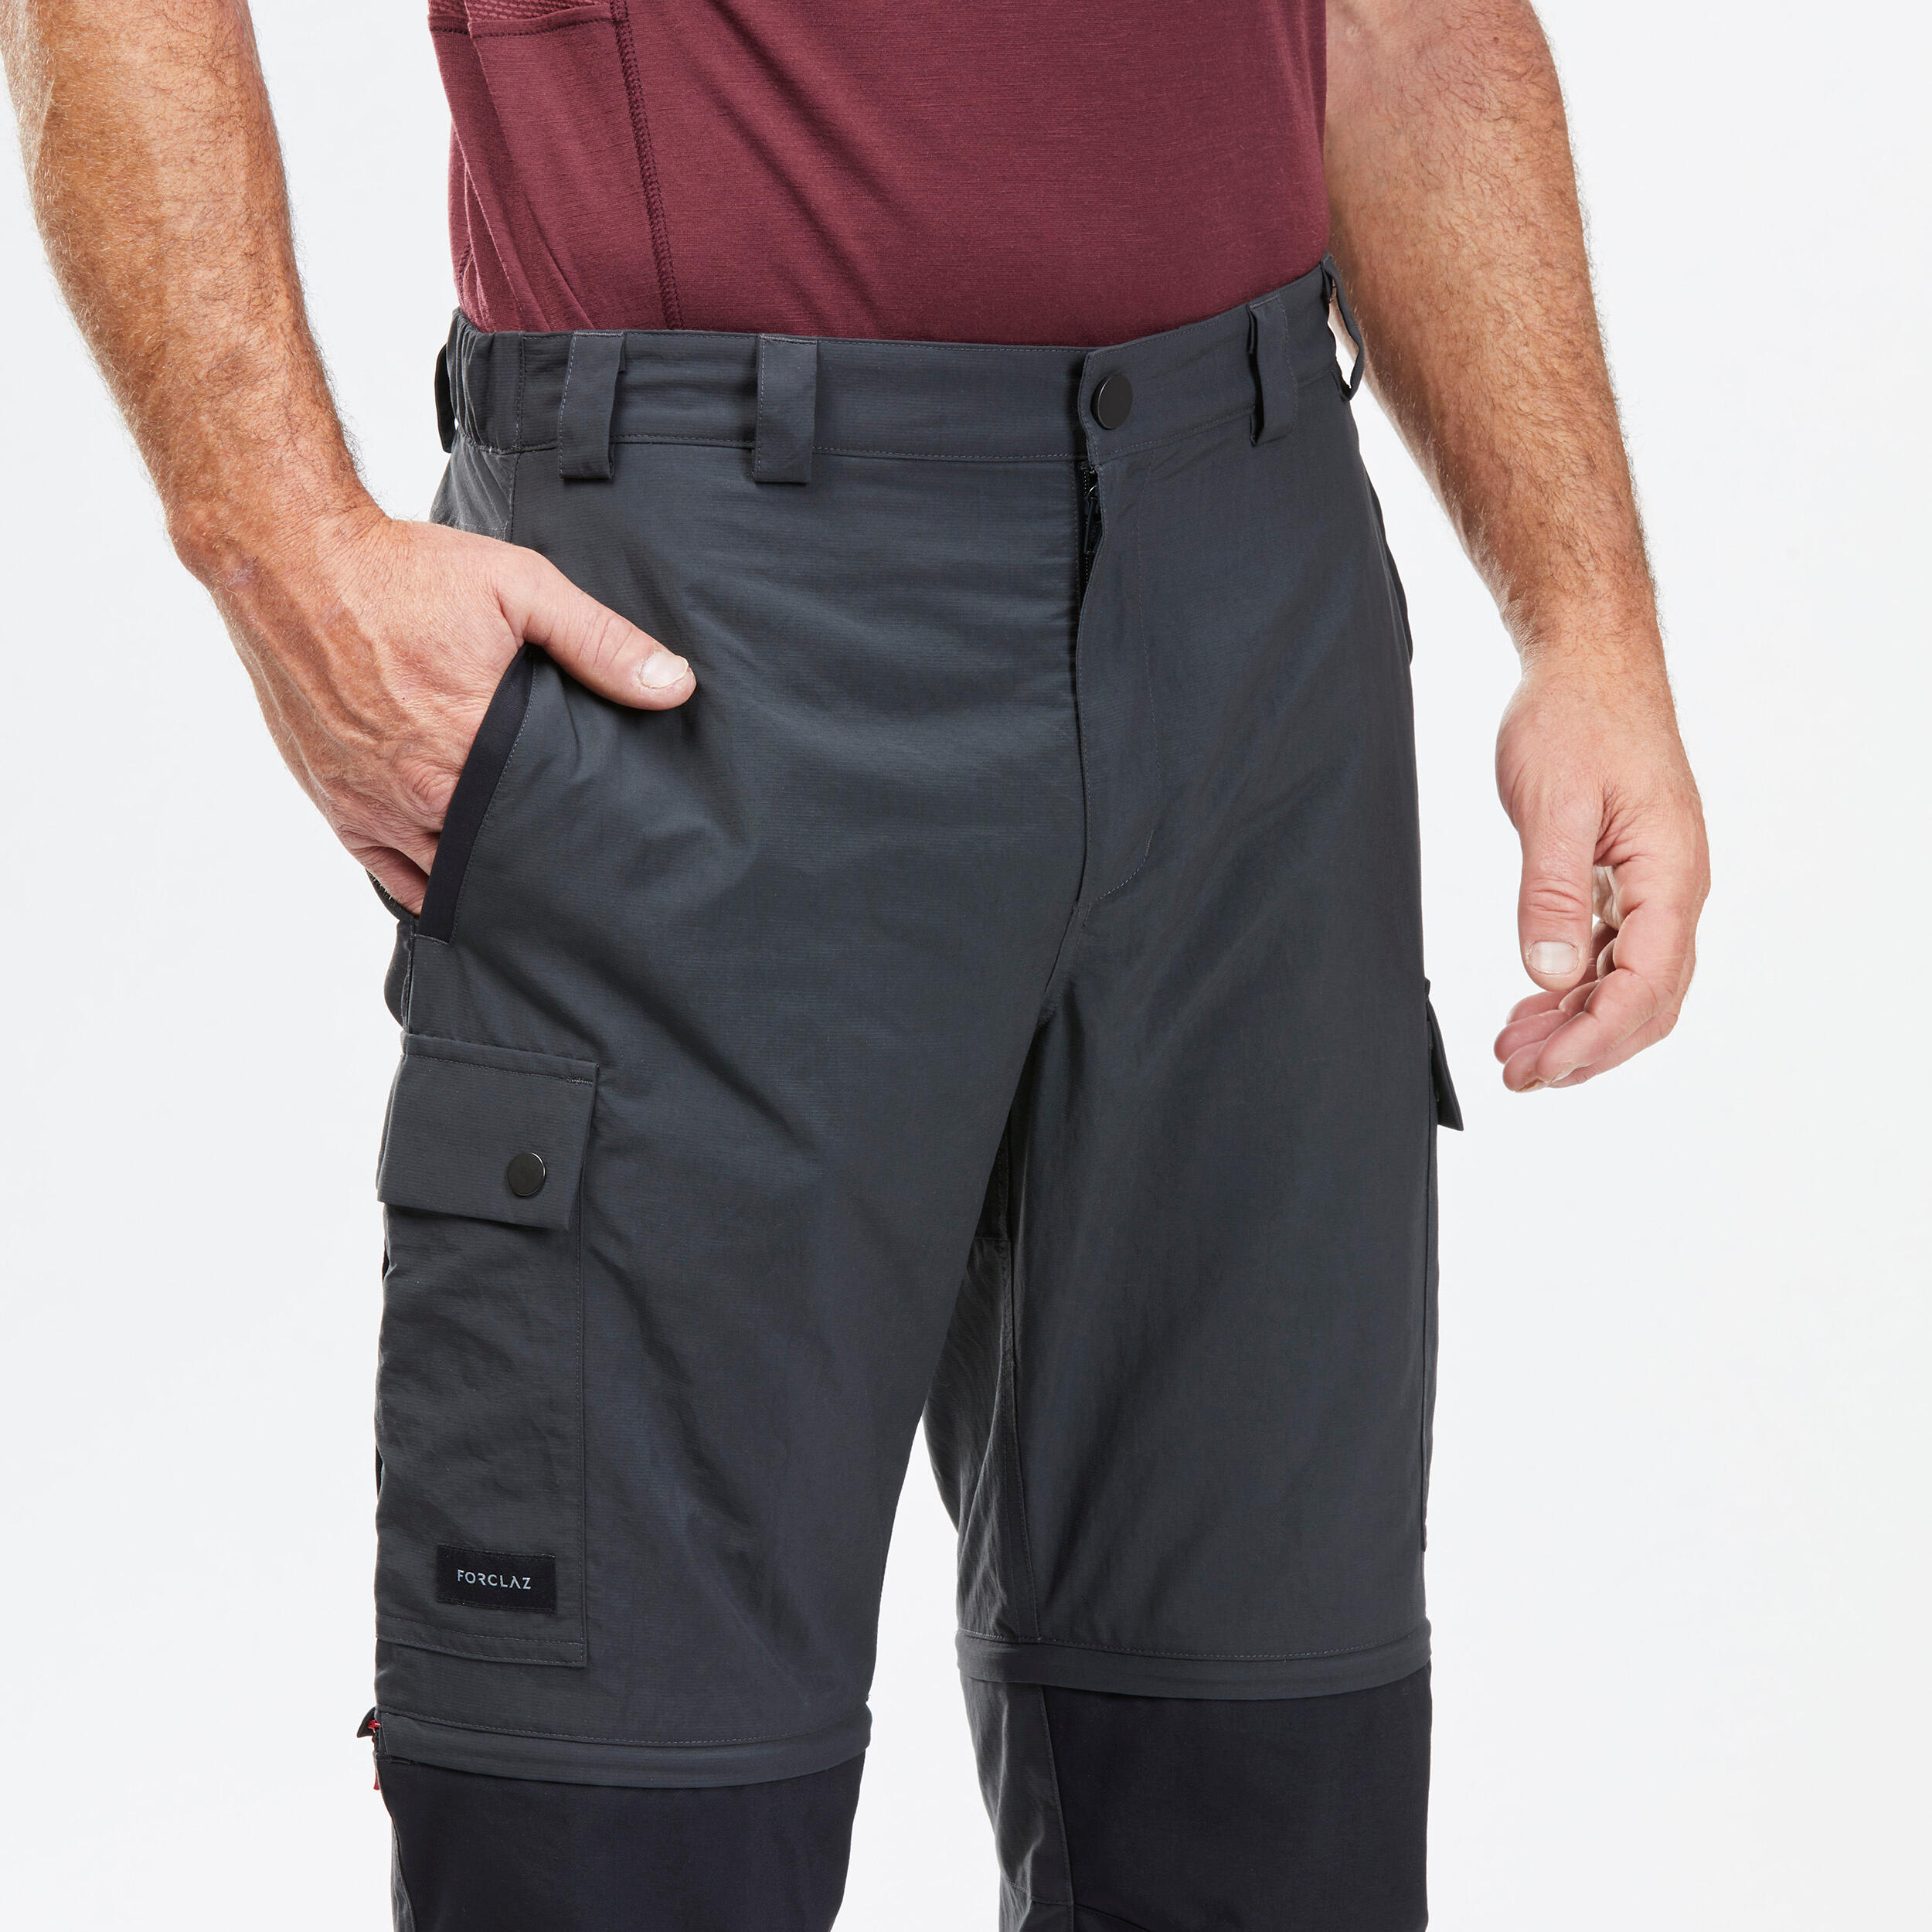 Outdoorweb.eu - LIGNE-M Tmavě modrá - Men's outdoor trousers - KILPI -  47.49 € - outdoorové oblečení a vybavení shop